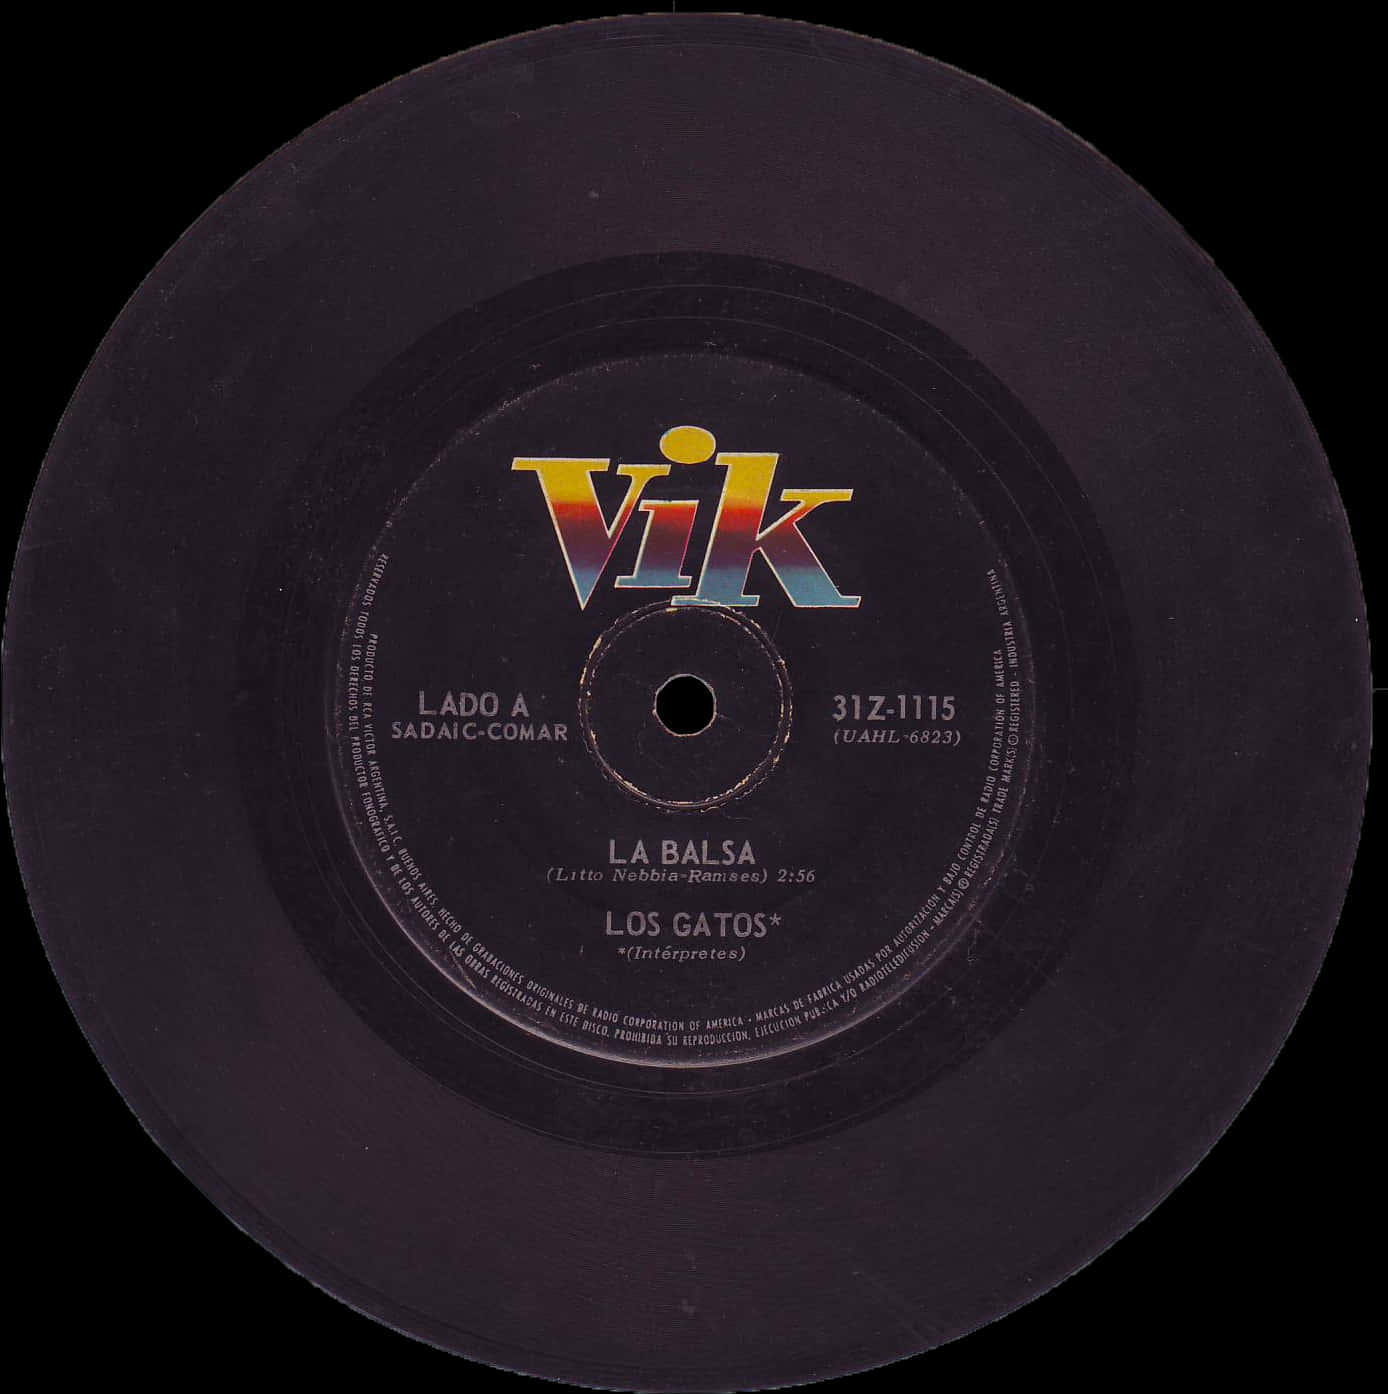 Vintage Vik Record La Balsa Los Gatos PNG image